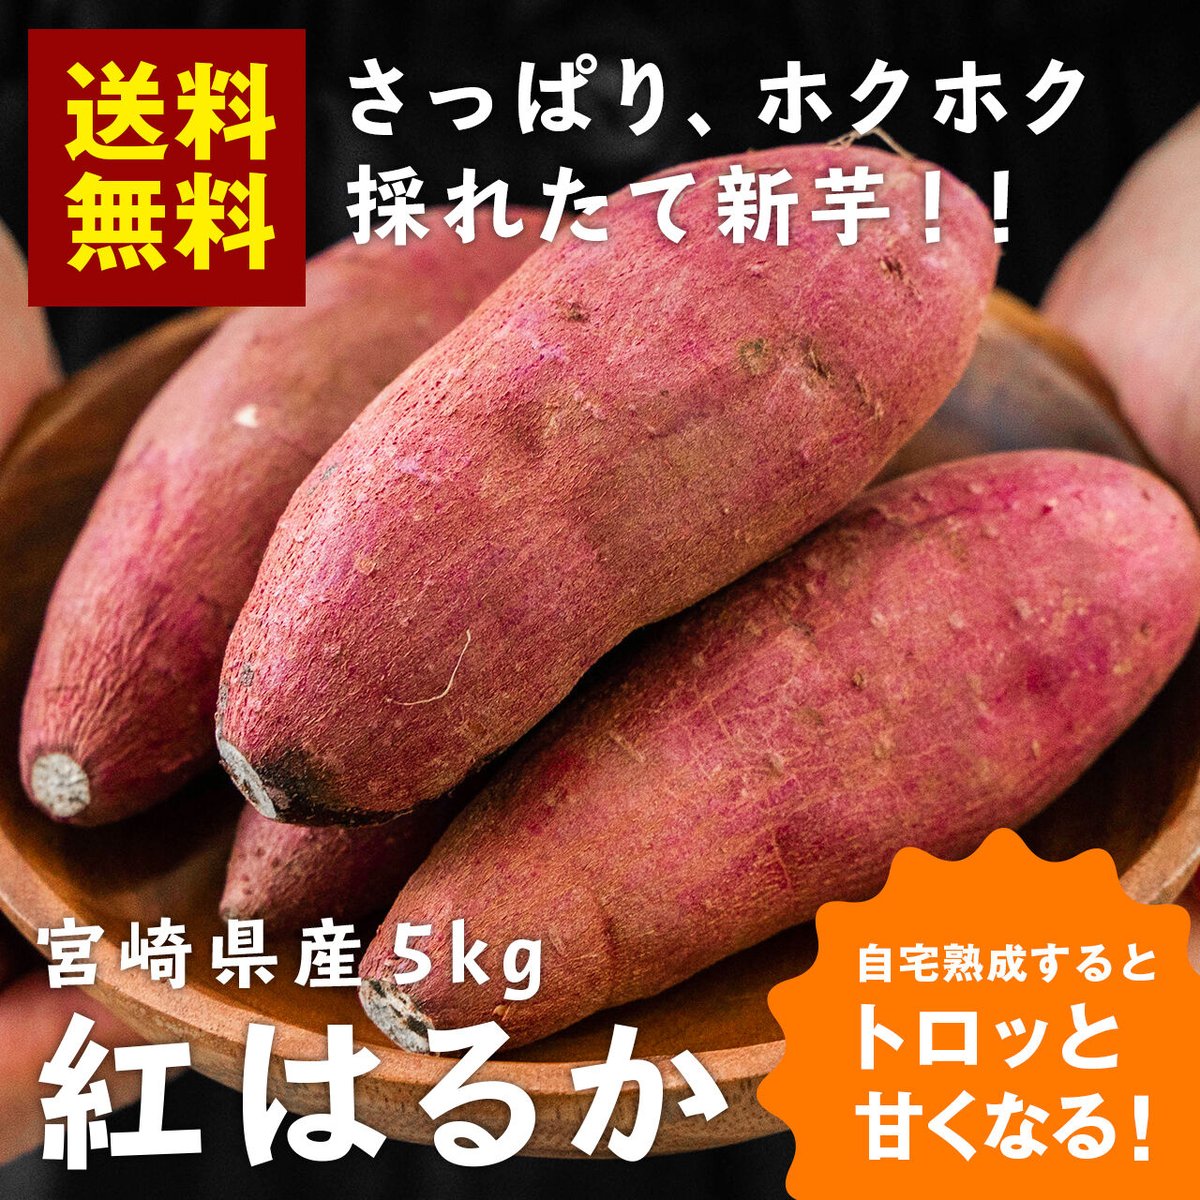 【品番S5K】紅はるか(セッコウ)5kg★茨城県ひたちなか特産干し芋★